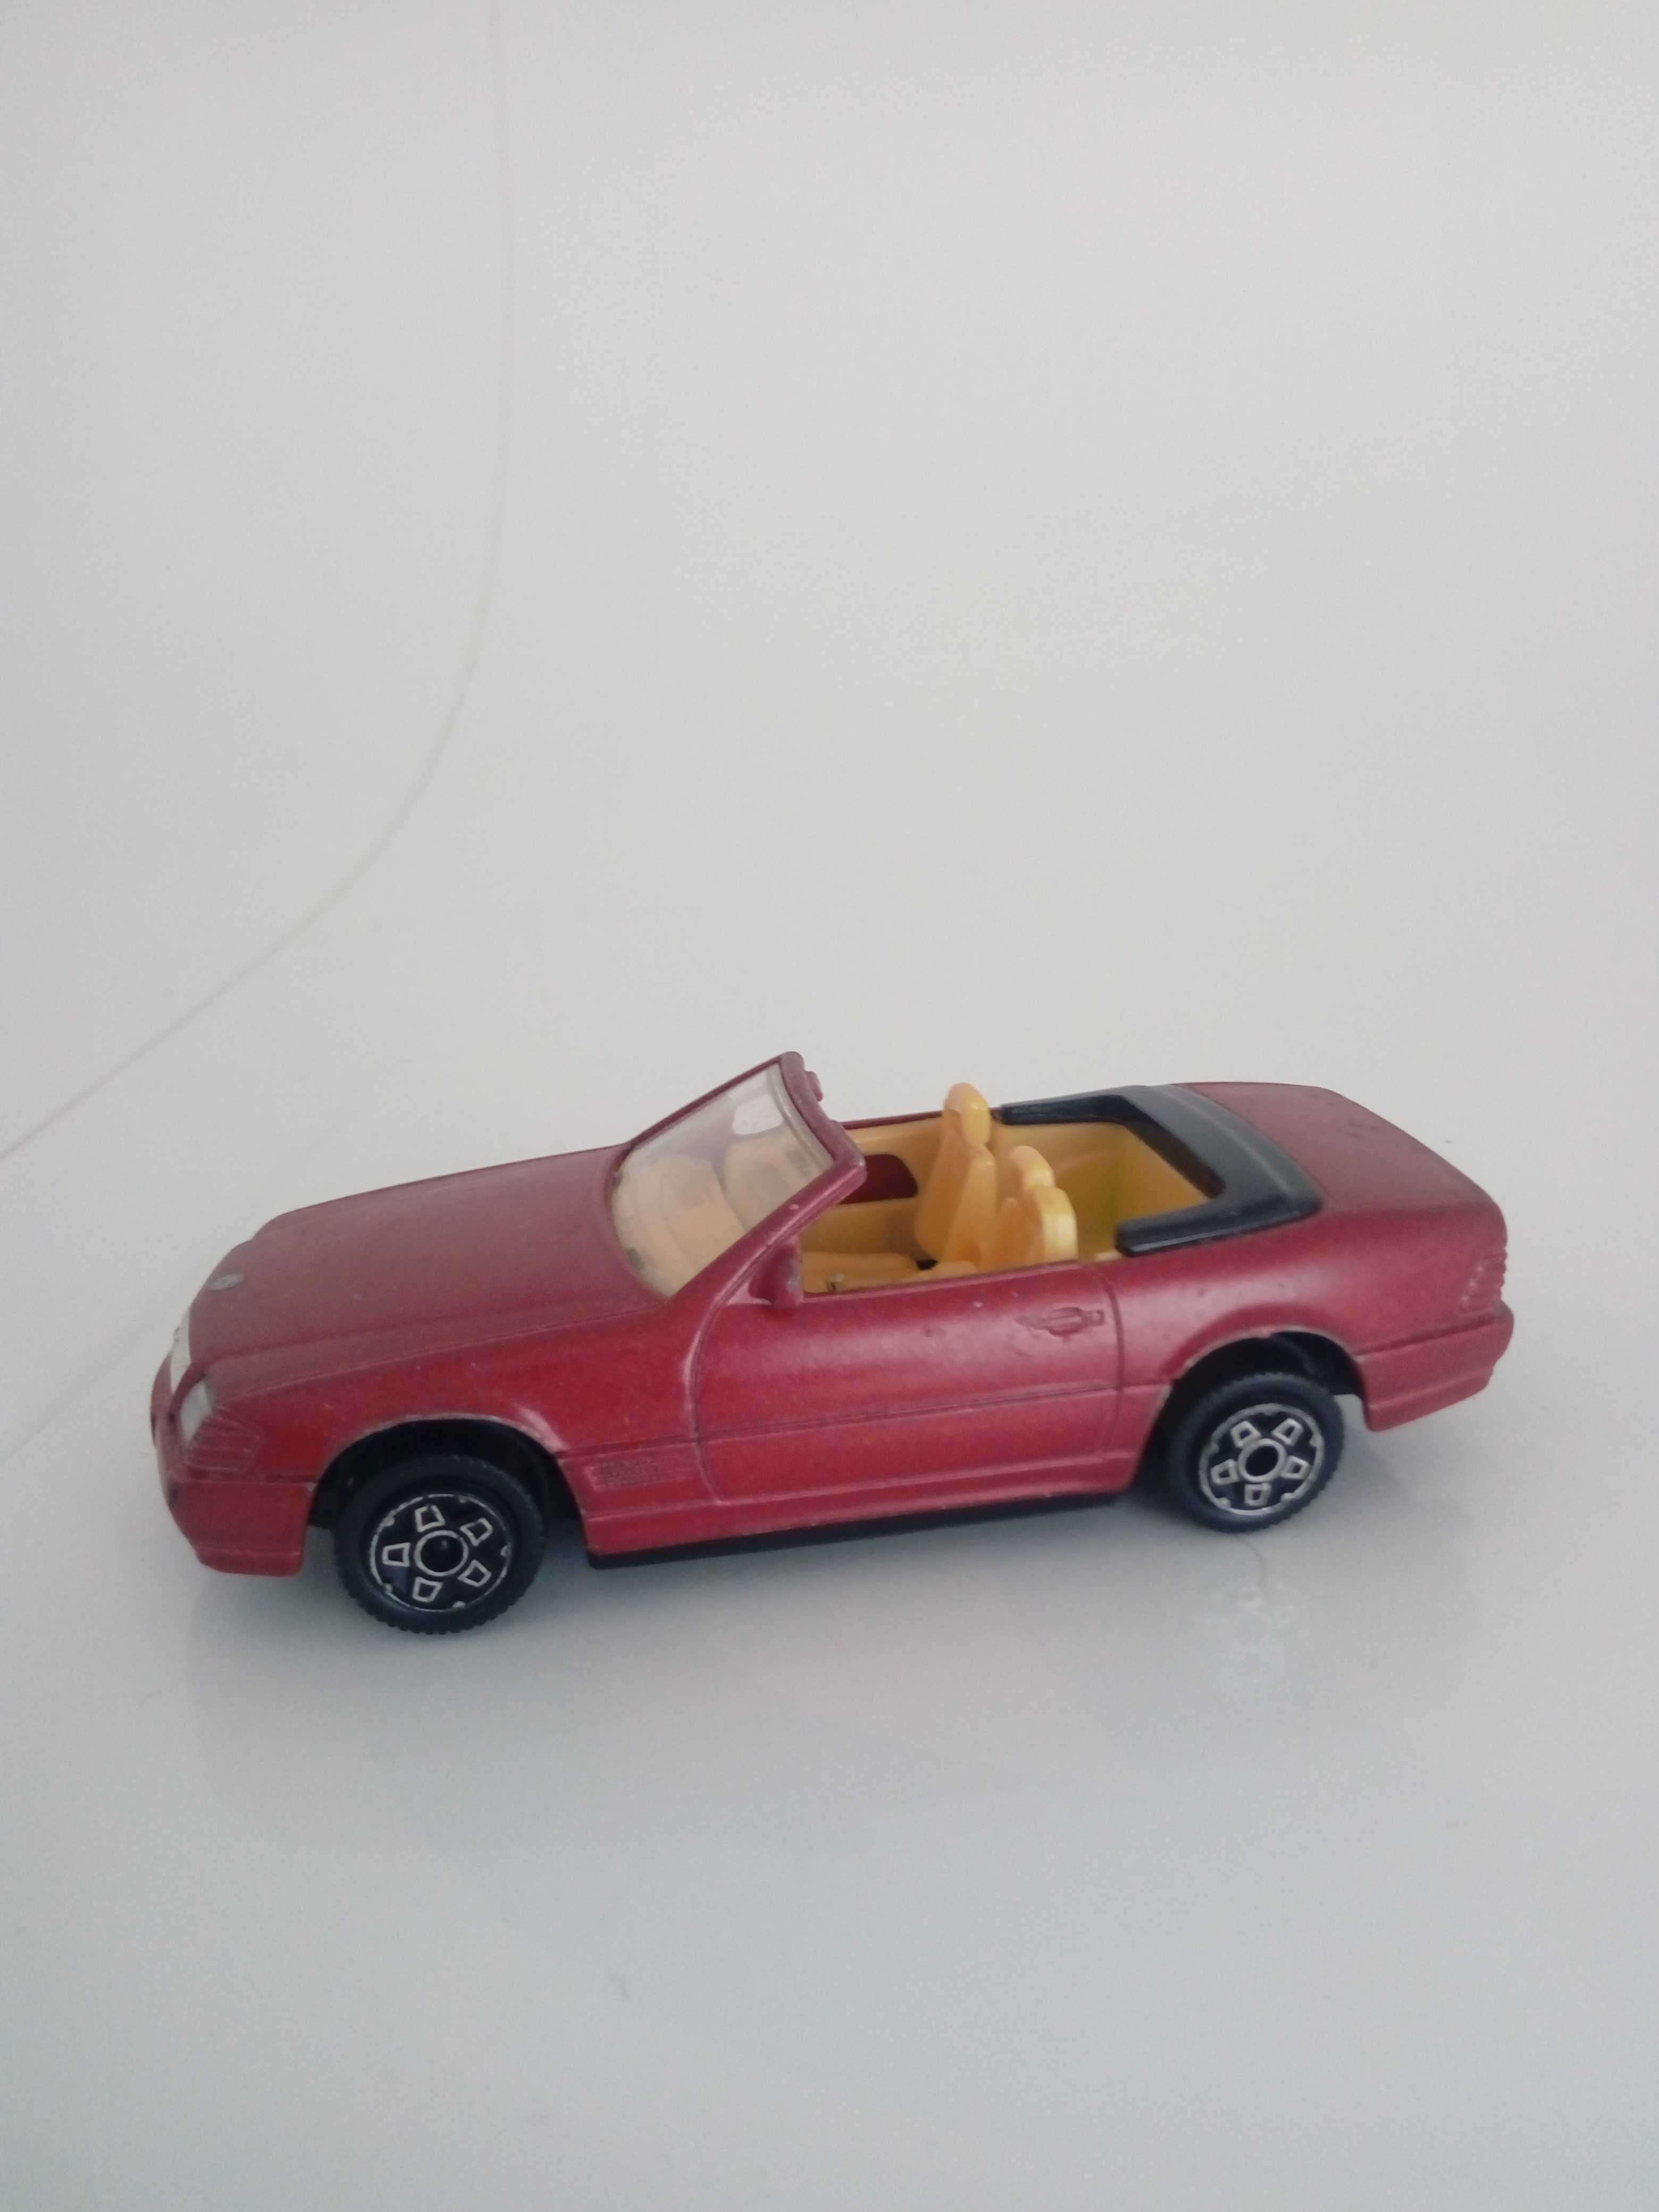 Carros miniaturas de colecção - Brincar